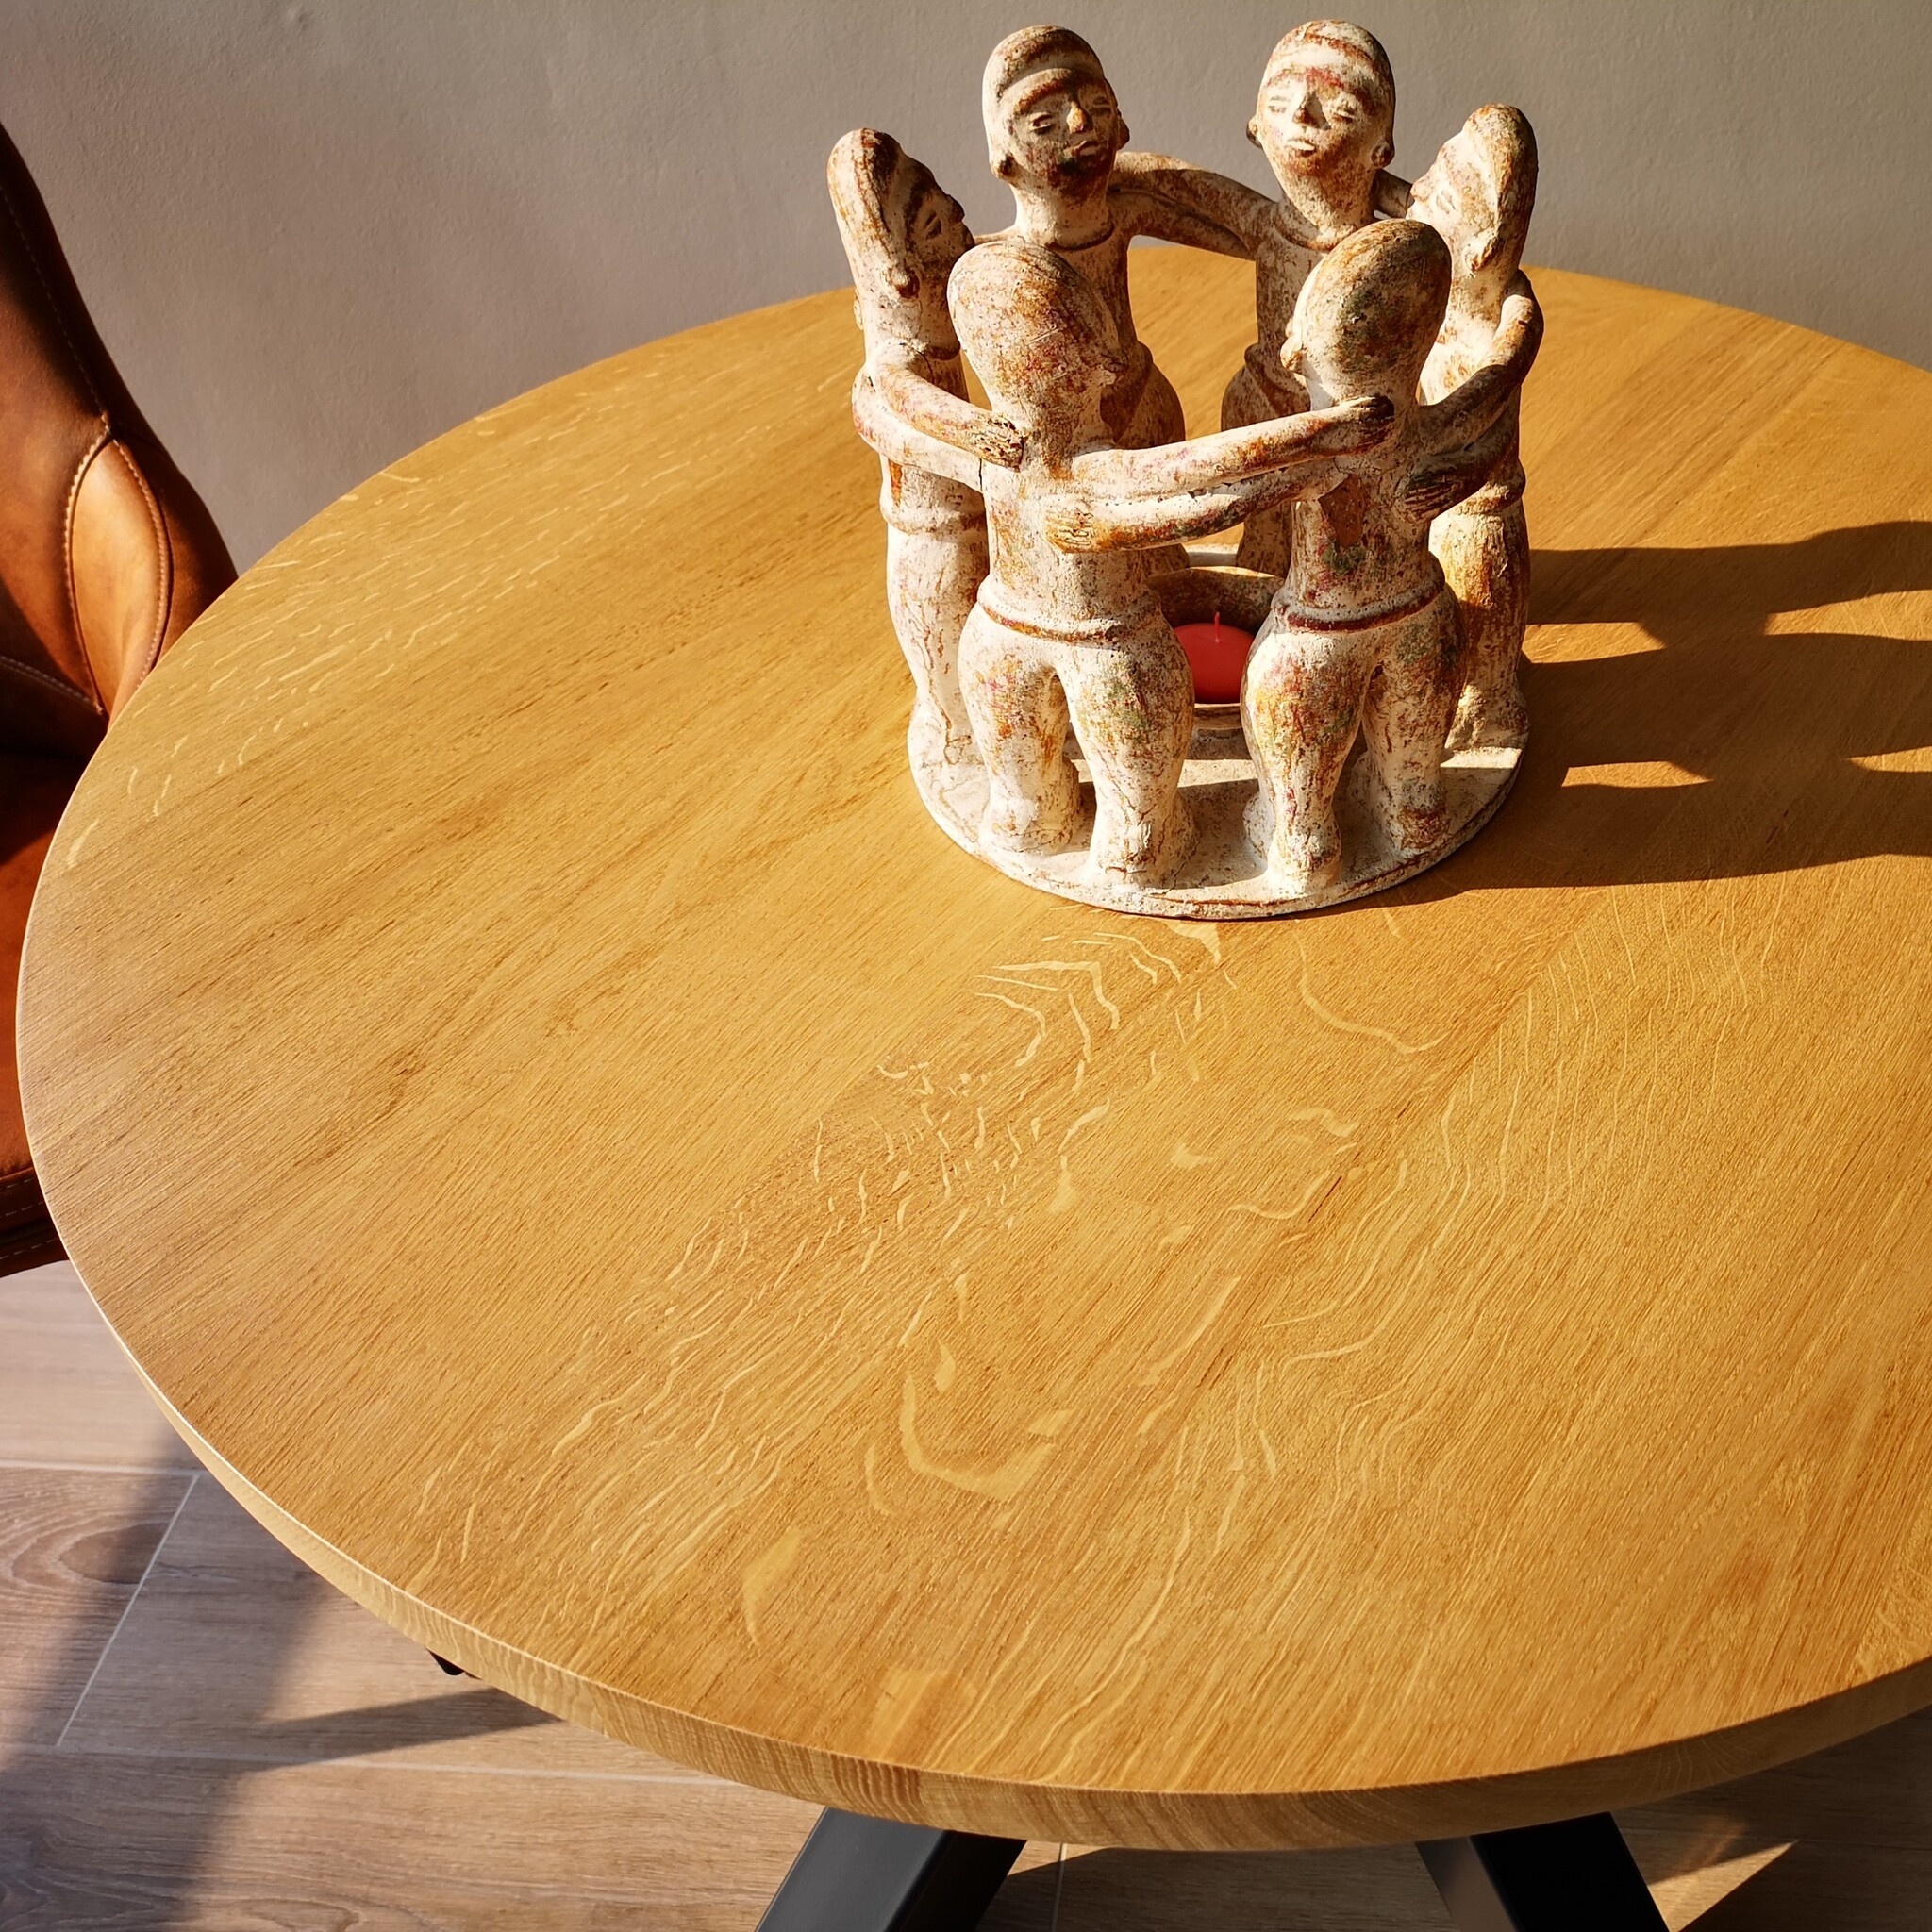  Tischplatte Eiche rund nach Maß - 2,5 cm dick - Eichenholz A-Qualität - Durchmesser: 30 - 180 cm - Eiche Tischplatte rund massiv - verleimt & künstlich getrocknet (HF 8-12%)